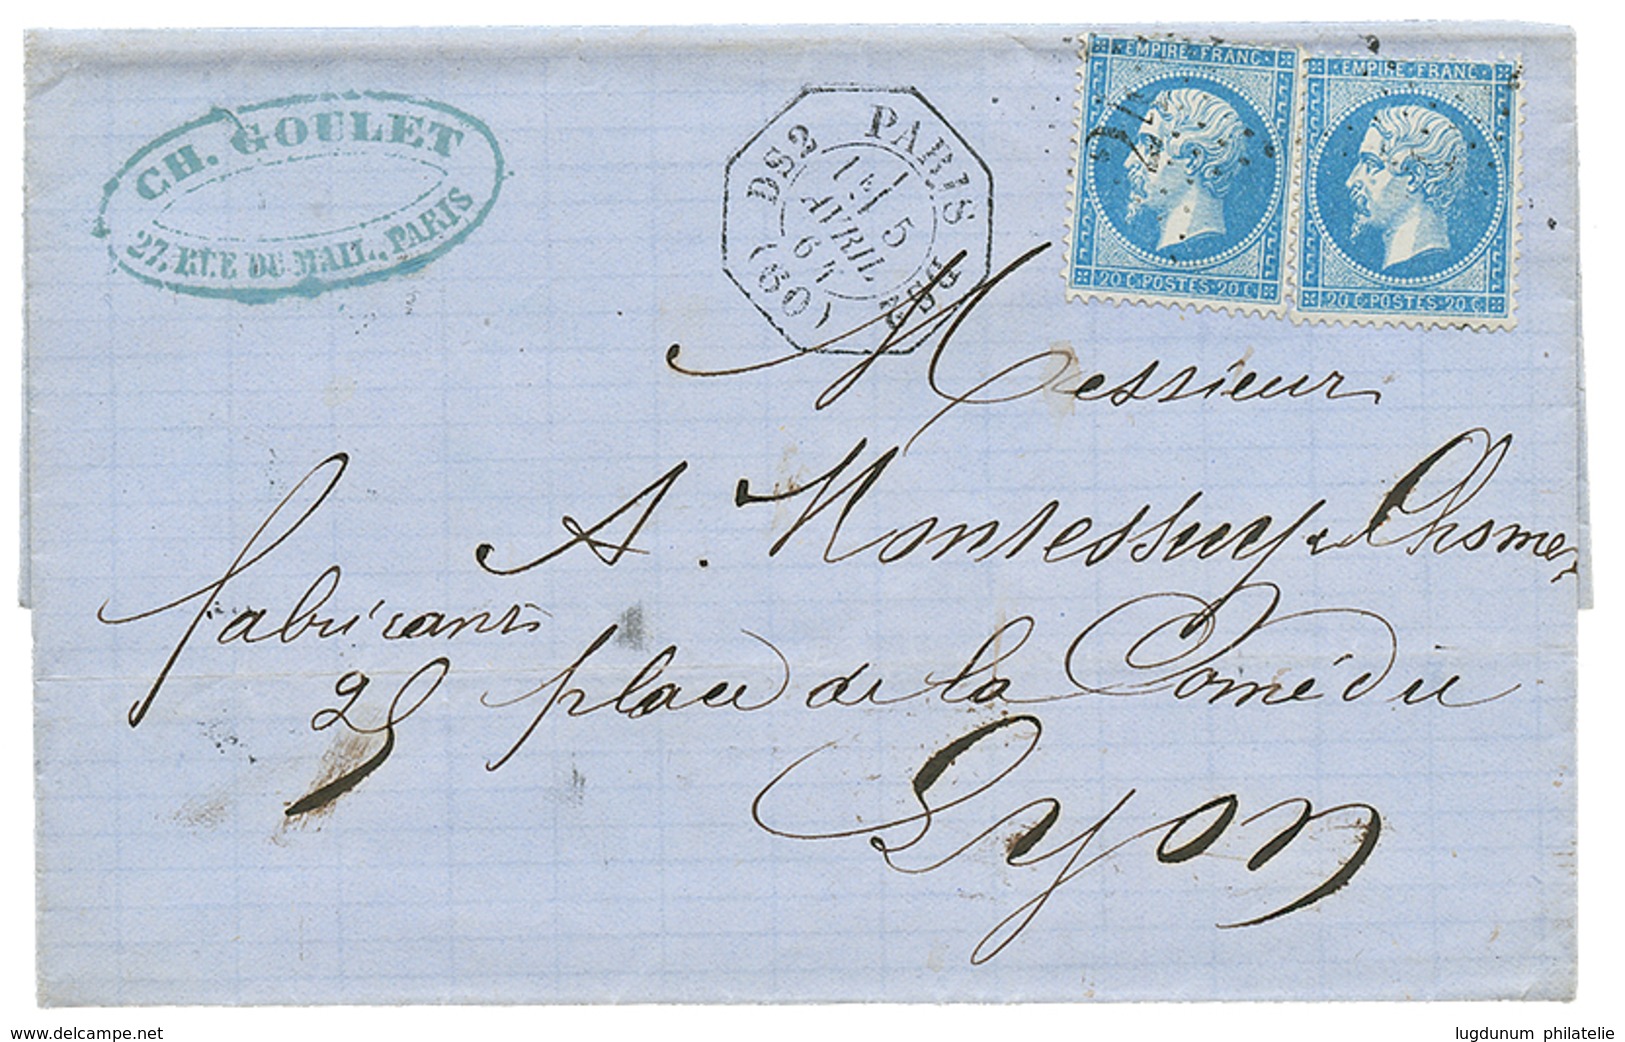 172 1864 20c(n°22)x2 Obl. Etoile 24 + LEVEE EXCEPTIONNELLE PARIS DS2/1e Sur Lettre Pour LYON. TTB. - 1862 Napoleon III